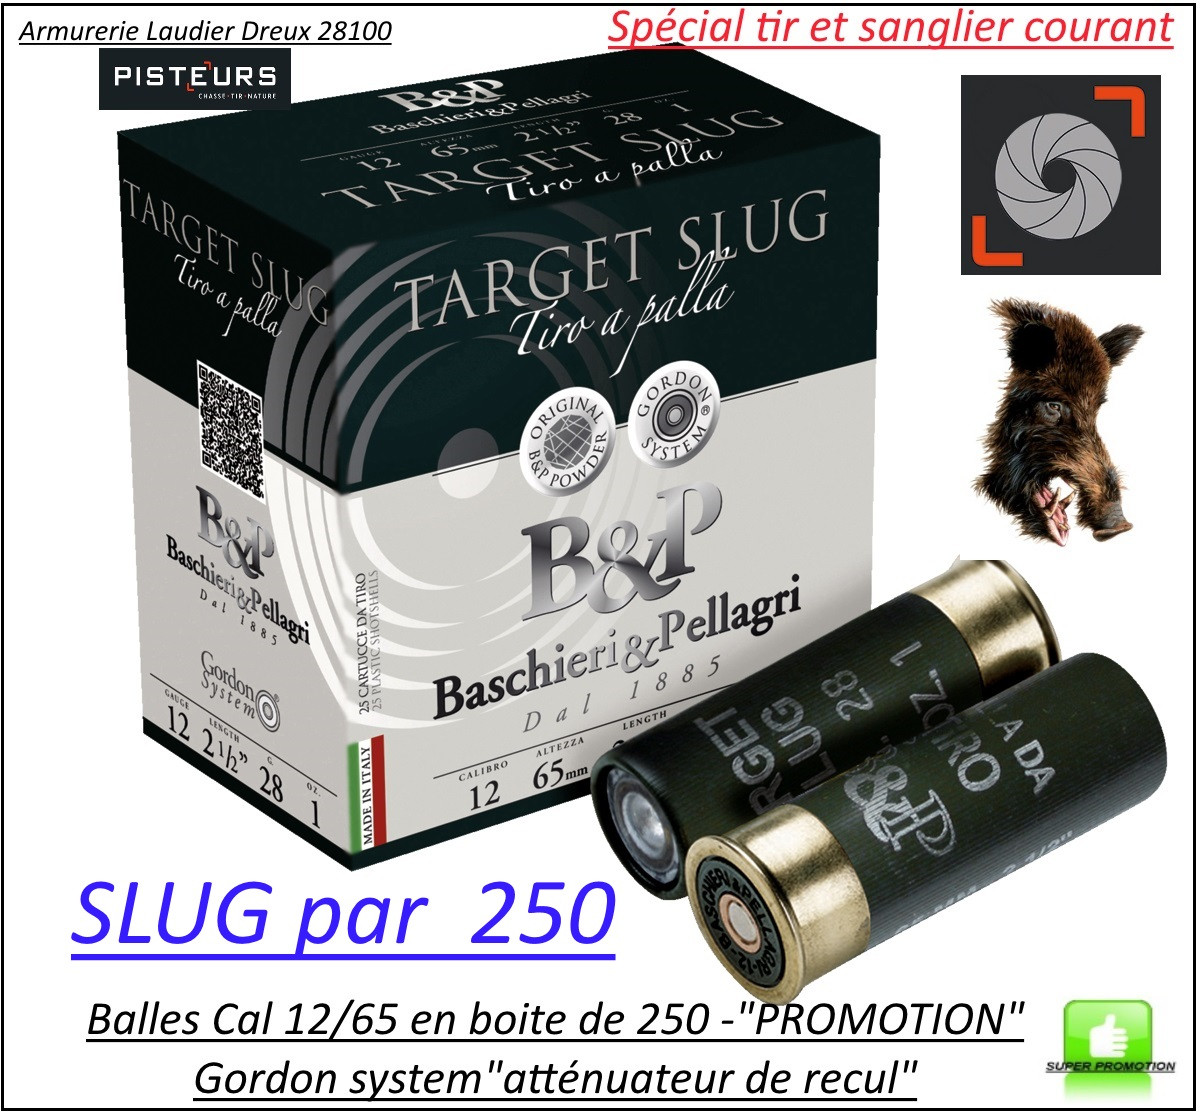 Cartouches balles SLUG Calibre 12/65 par 250 BASCHIERI & PELLAGRI-PROMOTION-Ref 27987